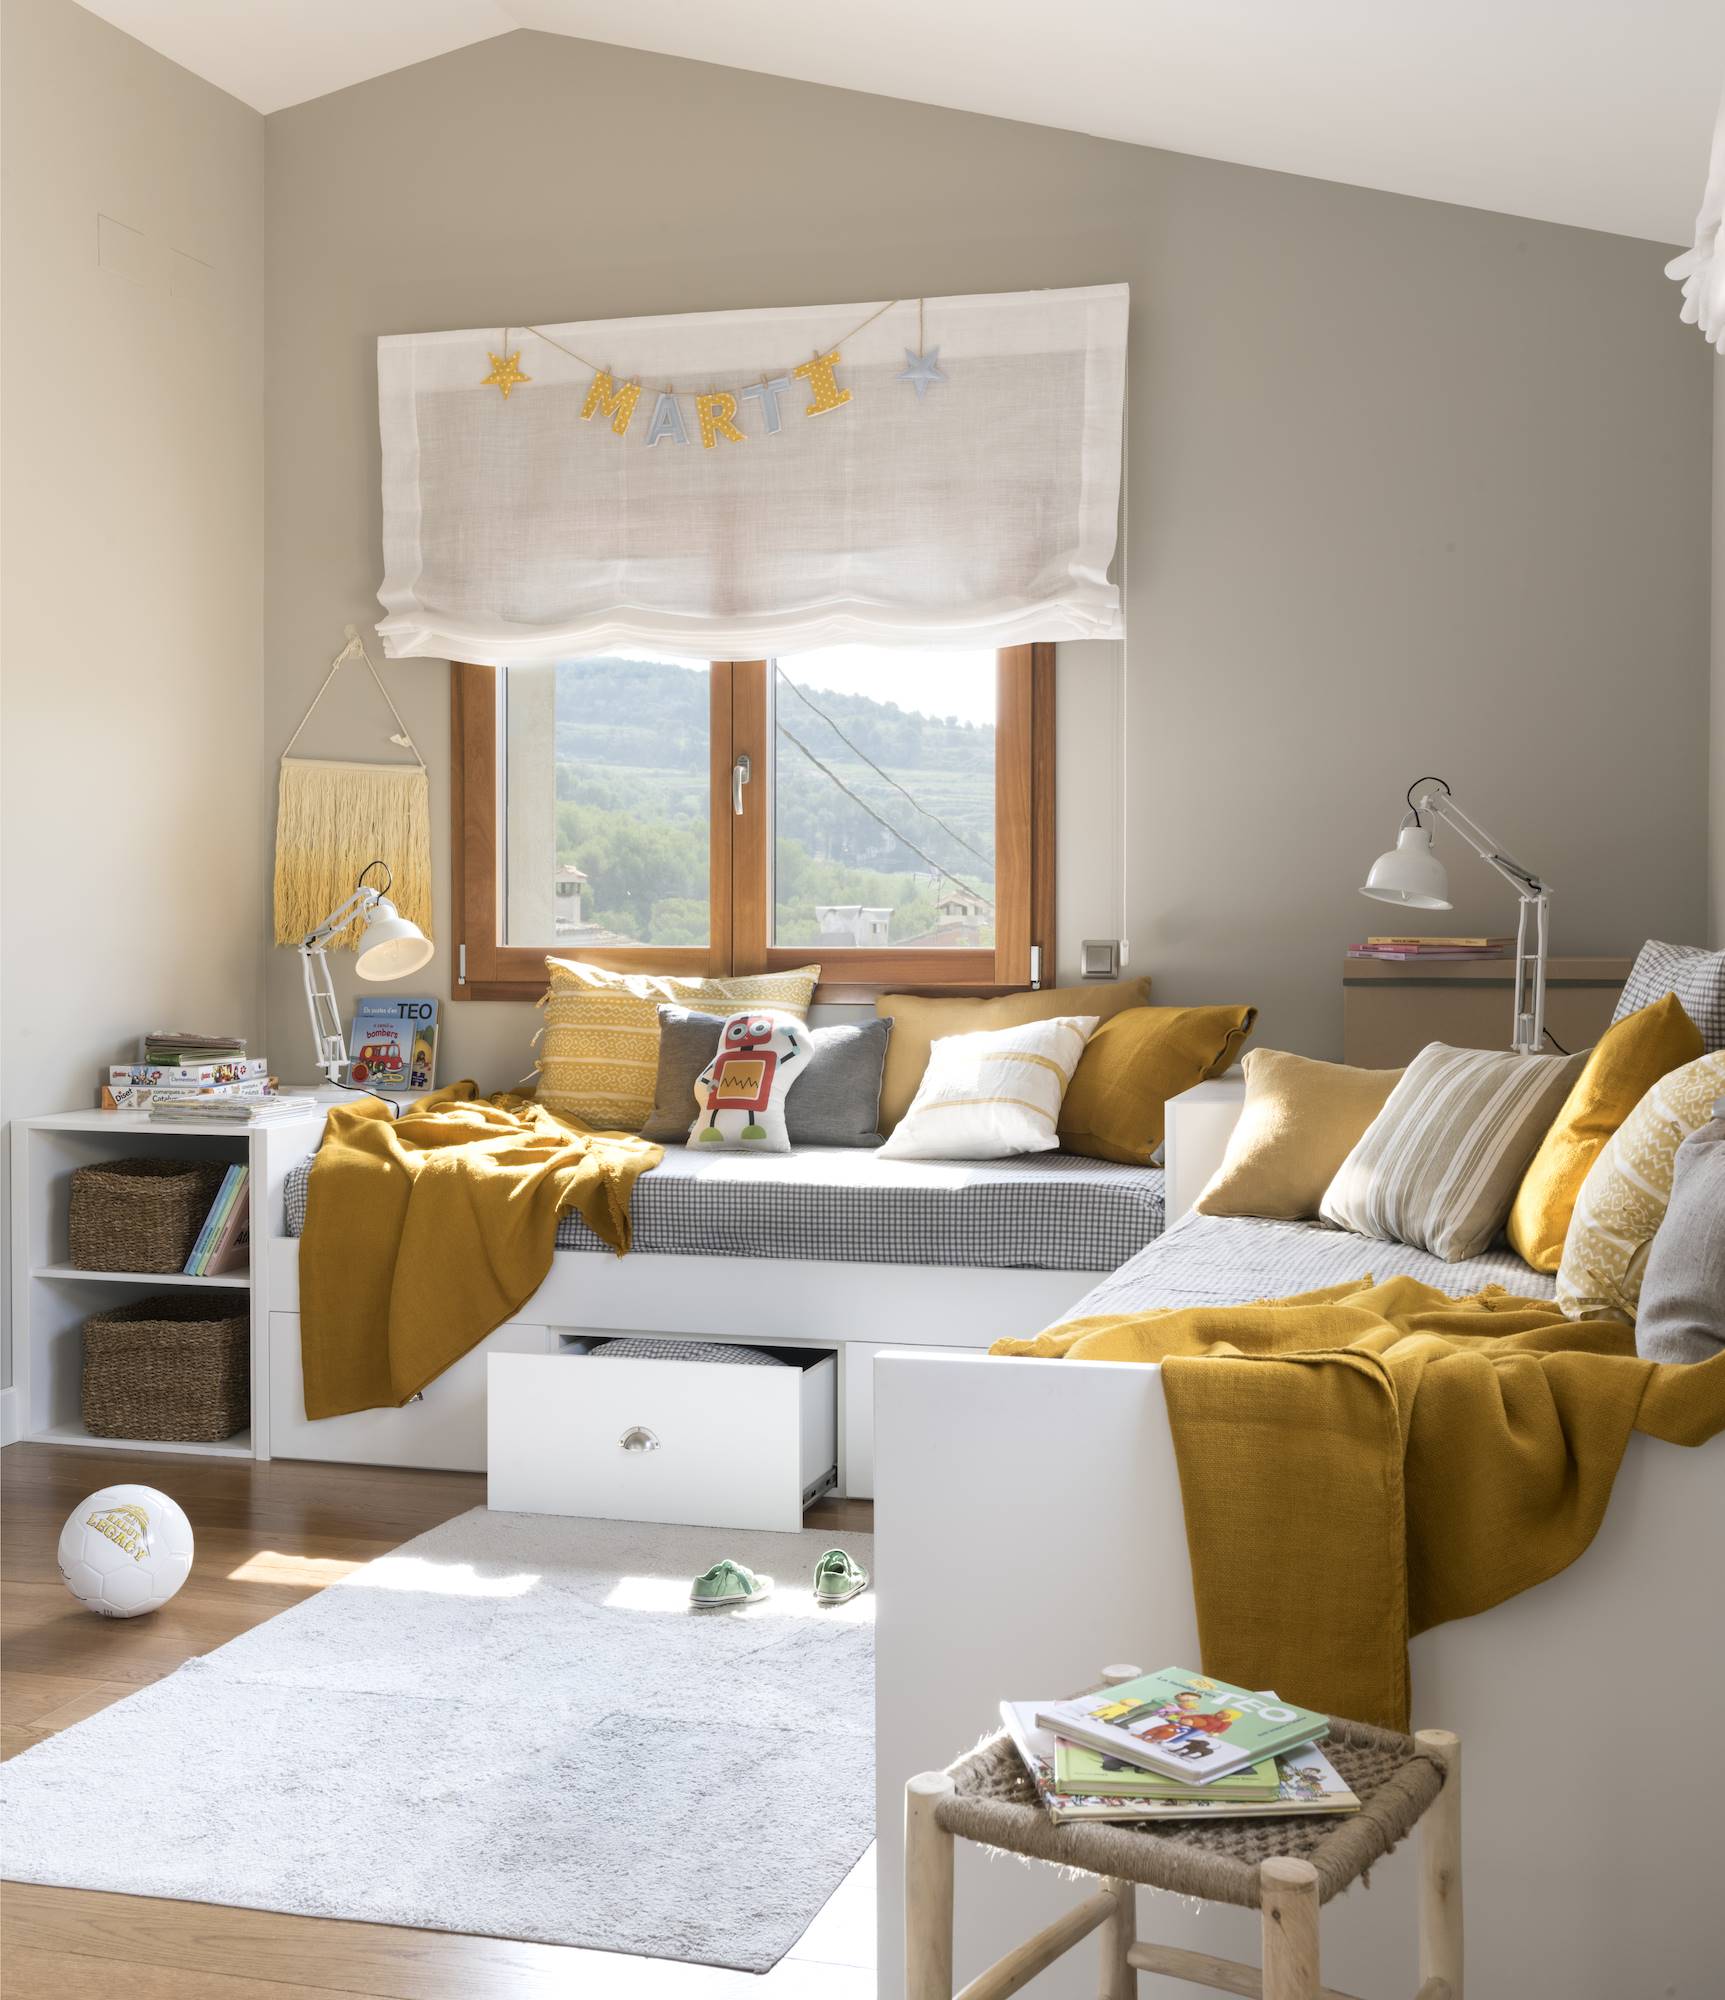 Habitación infantil con dos camas nido y textiles en color mostaza 00490934